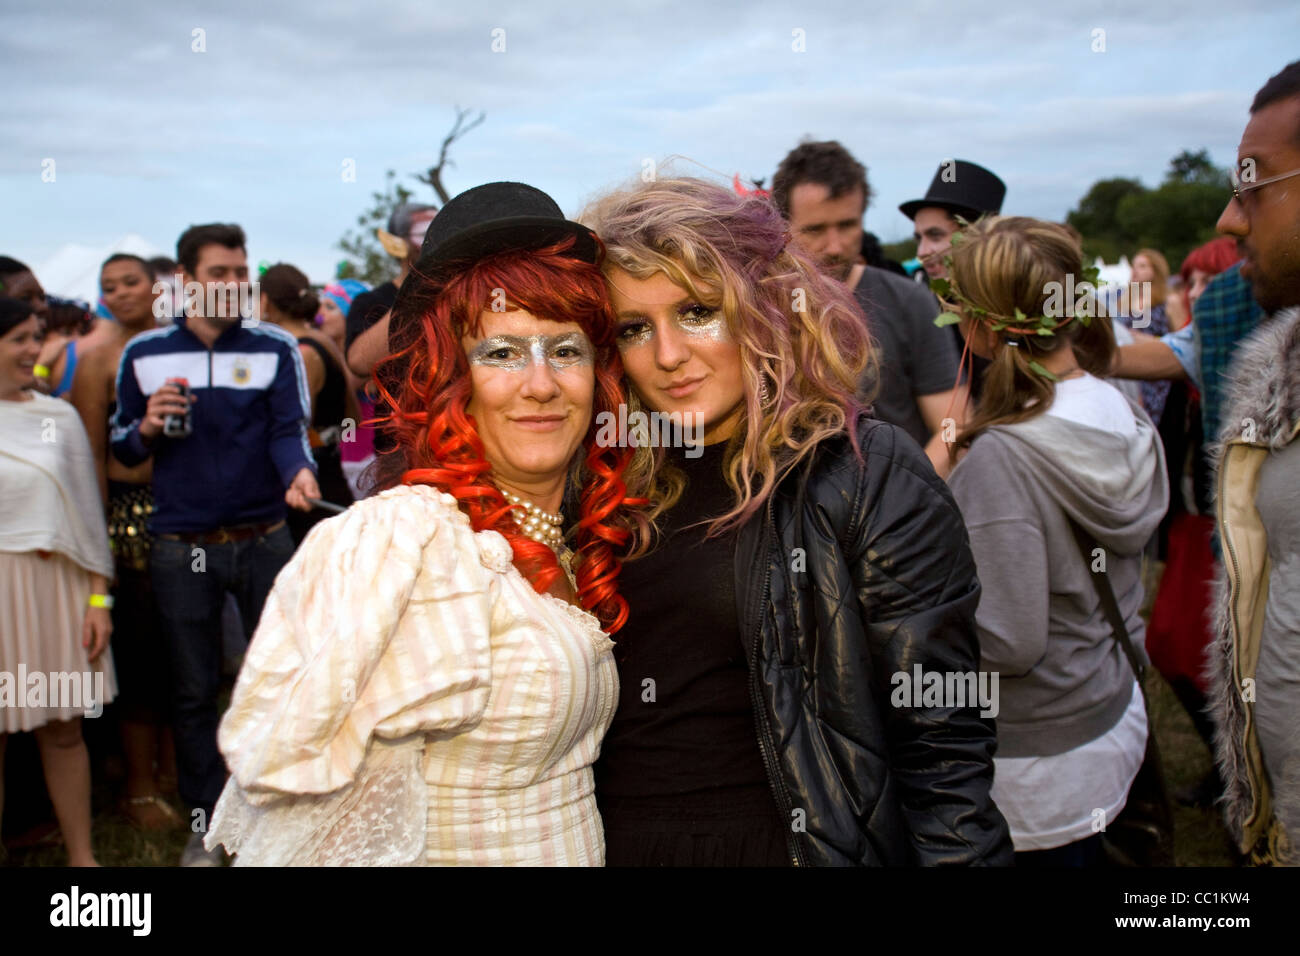 Dos mujeres, una de ellas en un sombrero en el Festival de Música Standon, Hertfordshire, UK Foto de stock